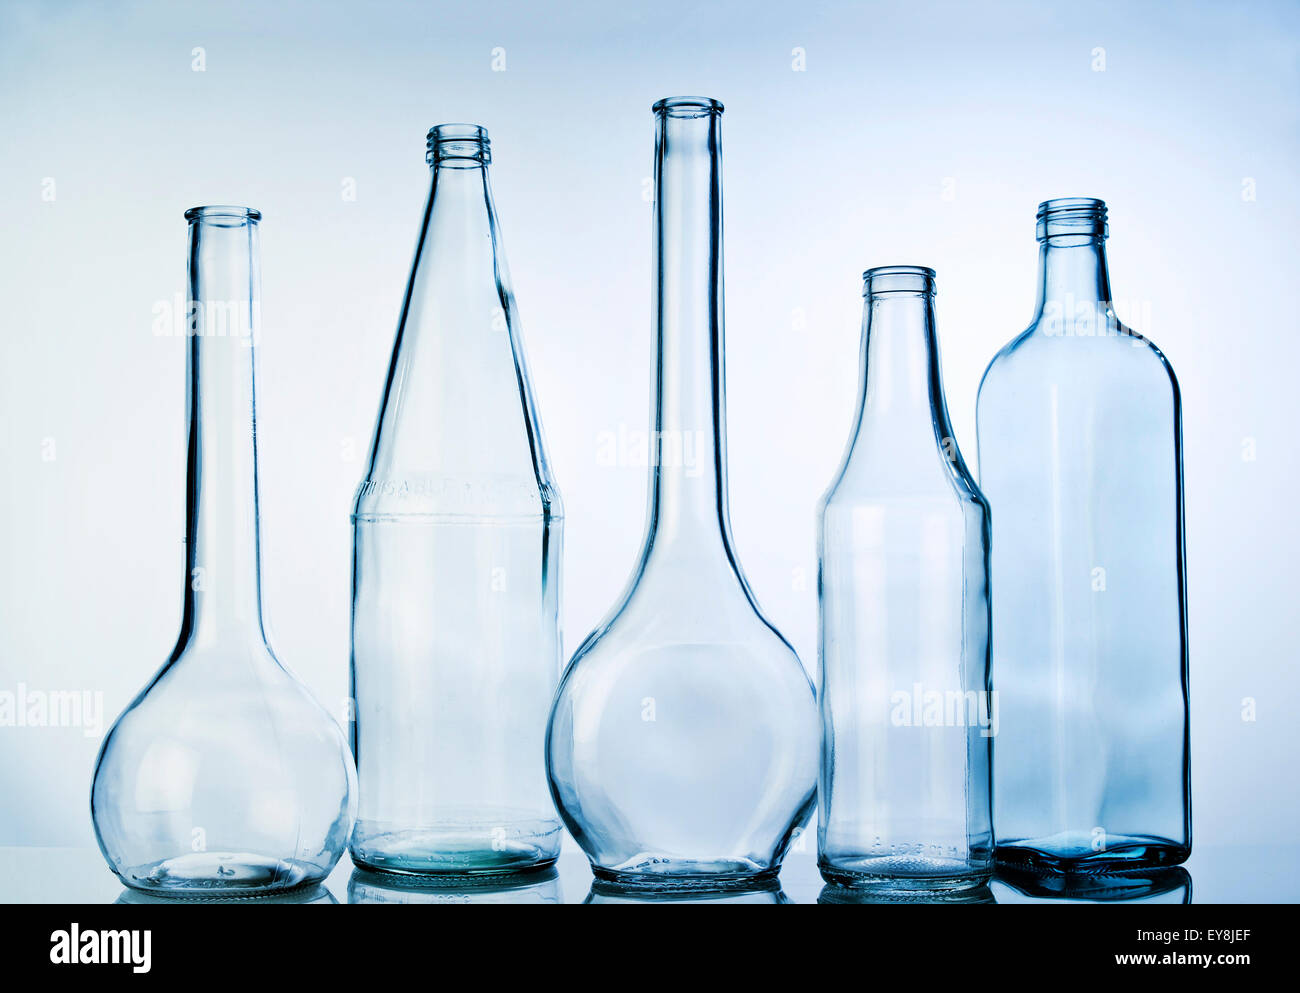 Cinq bouteilles en verre dans une rangée Banque D'Images